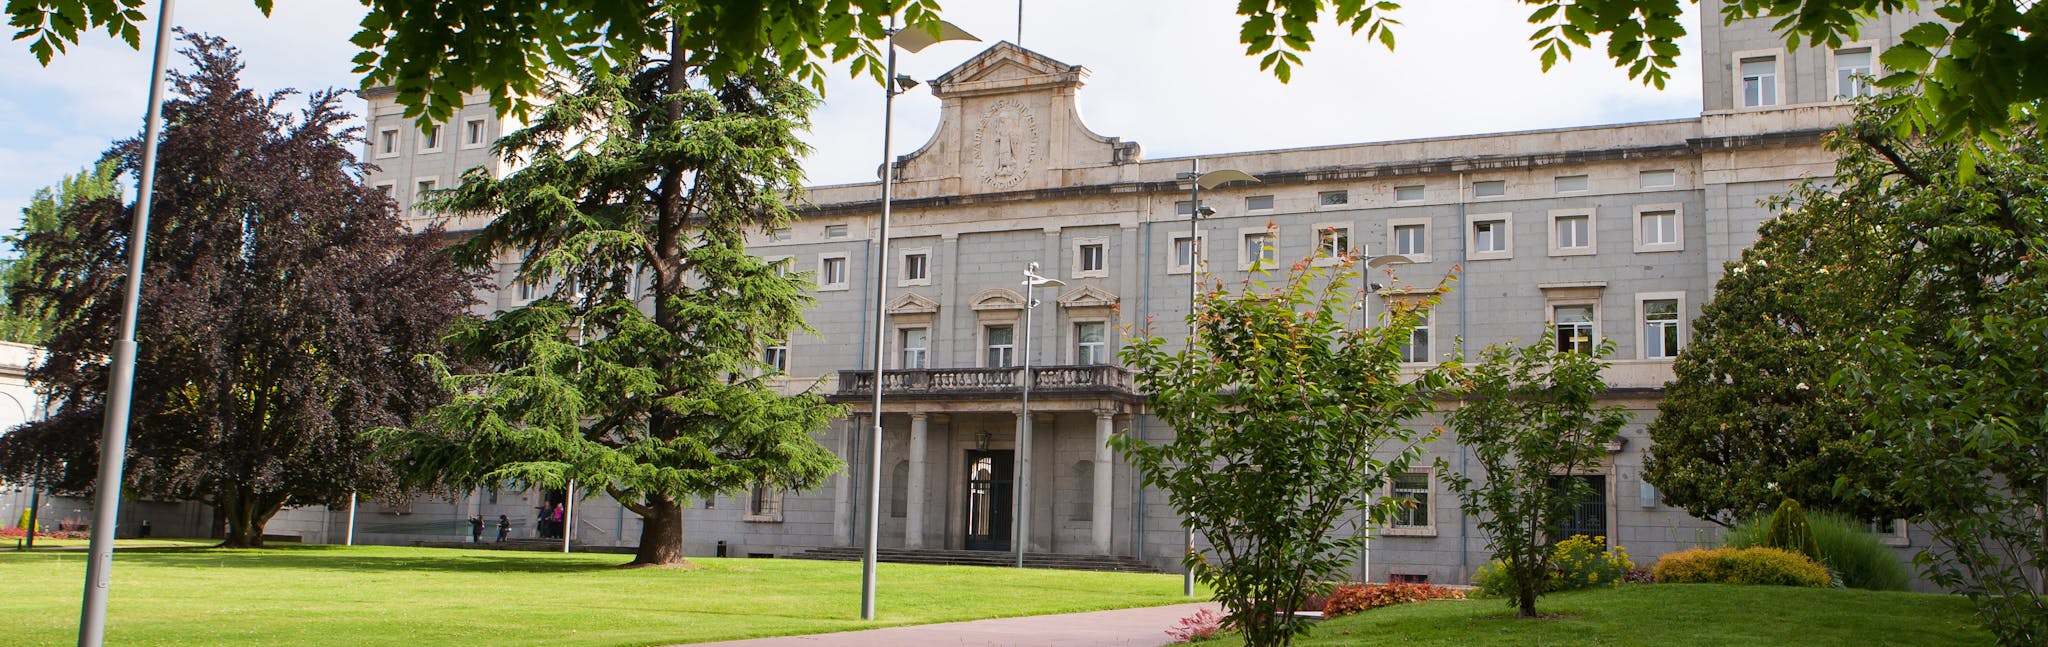 University of Navarra